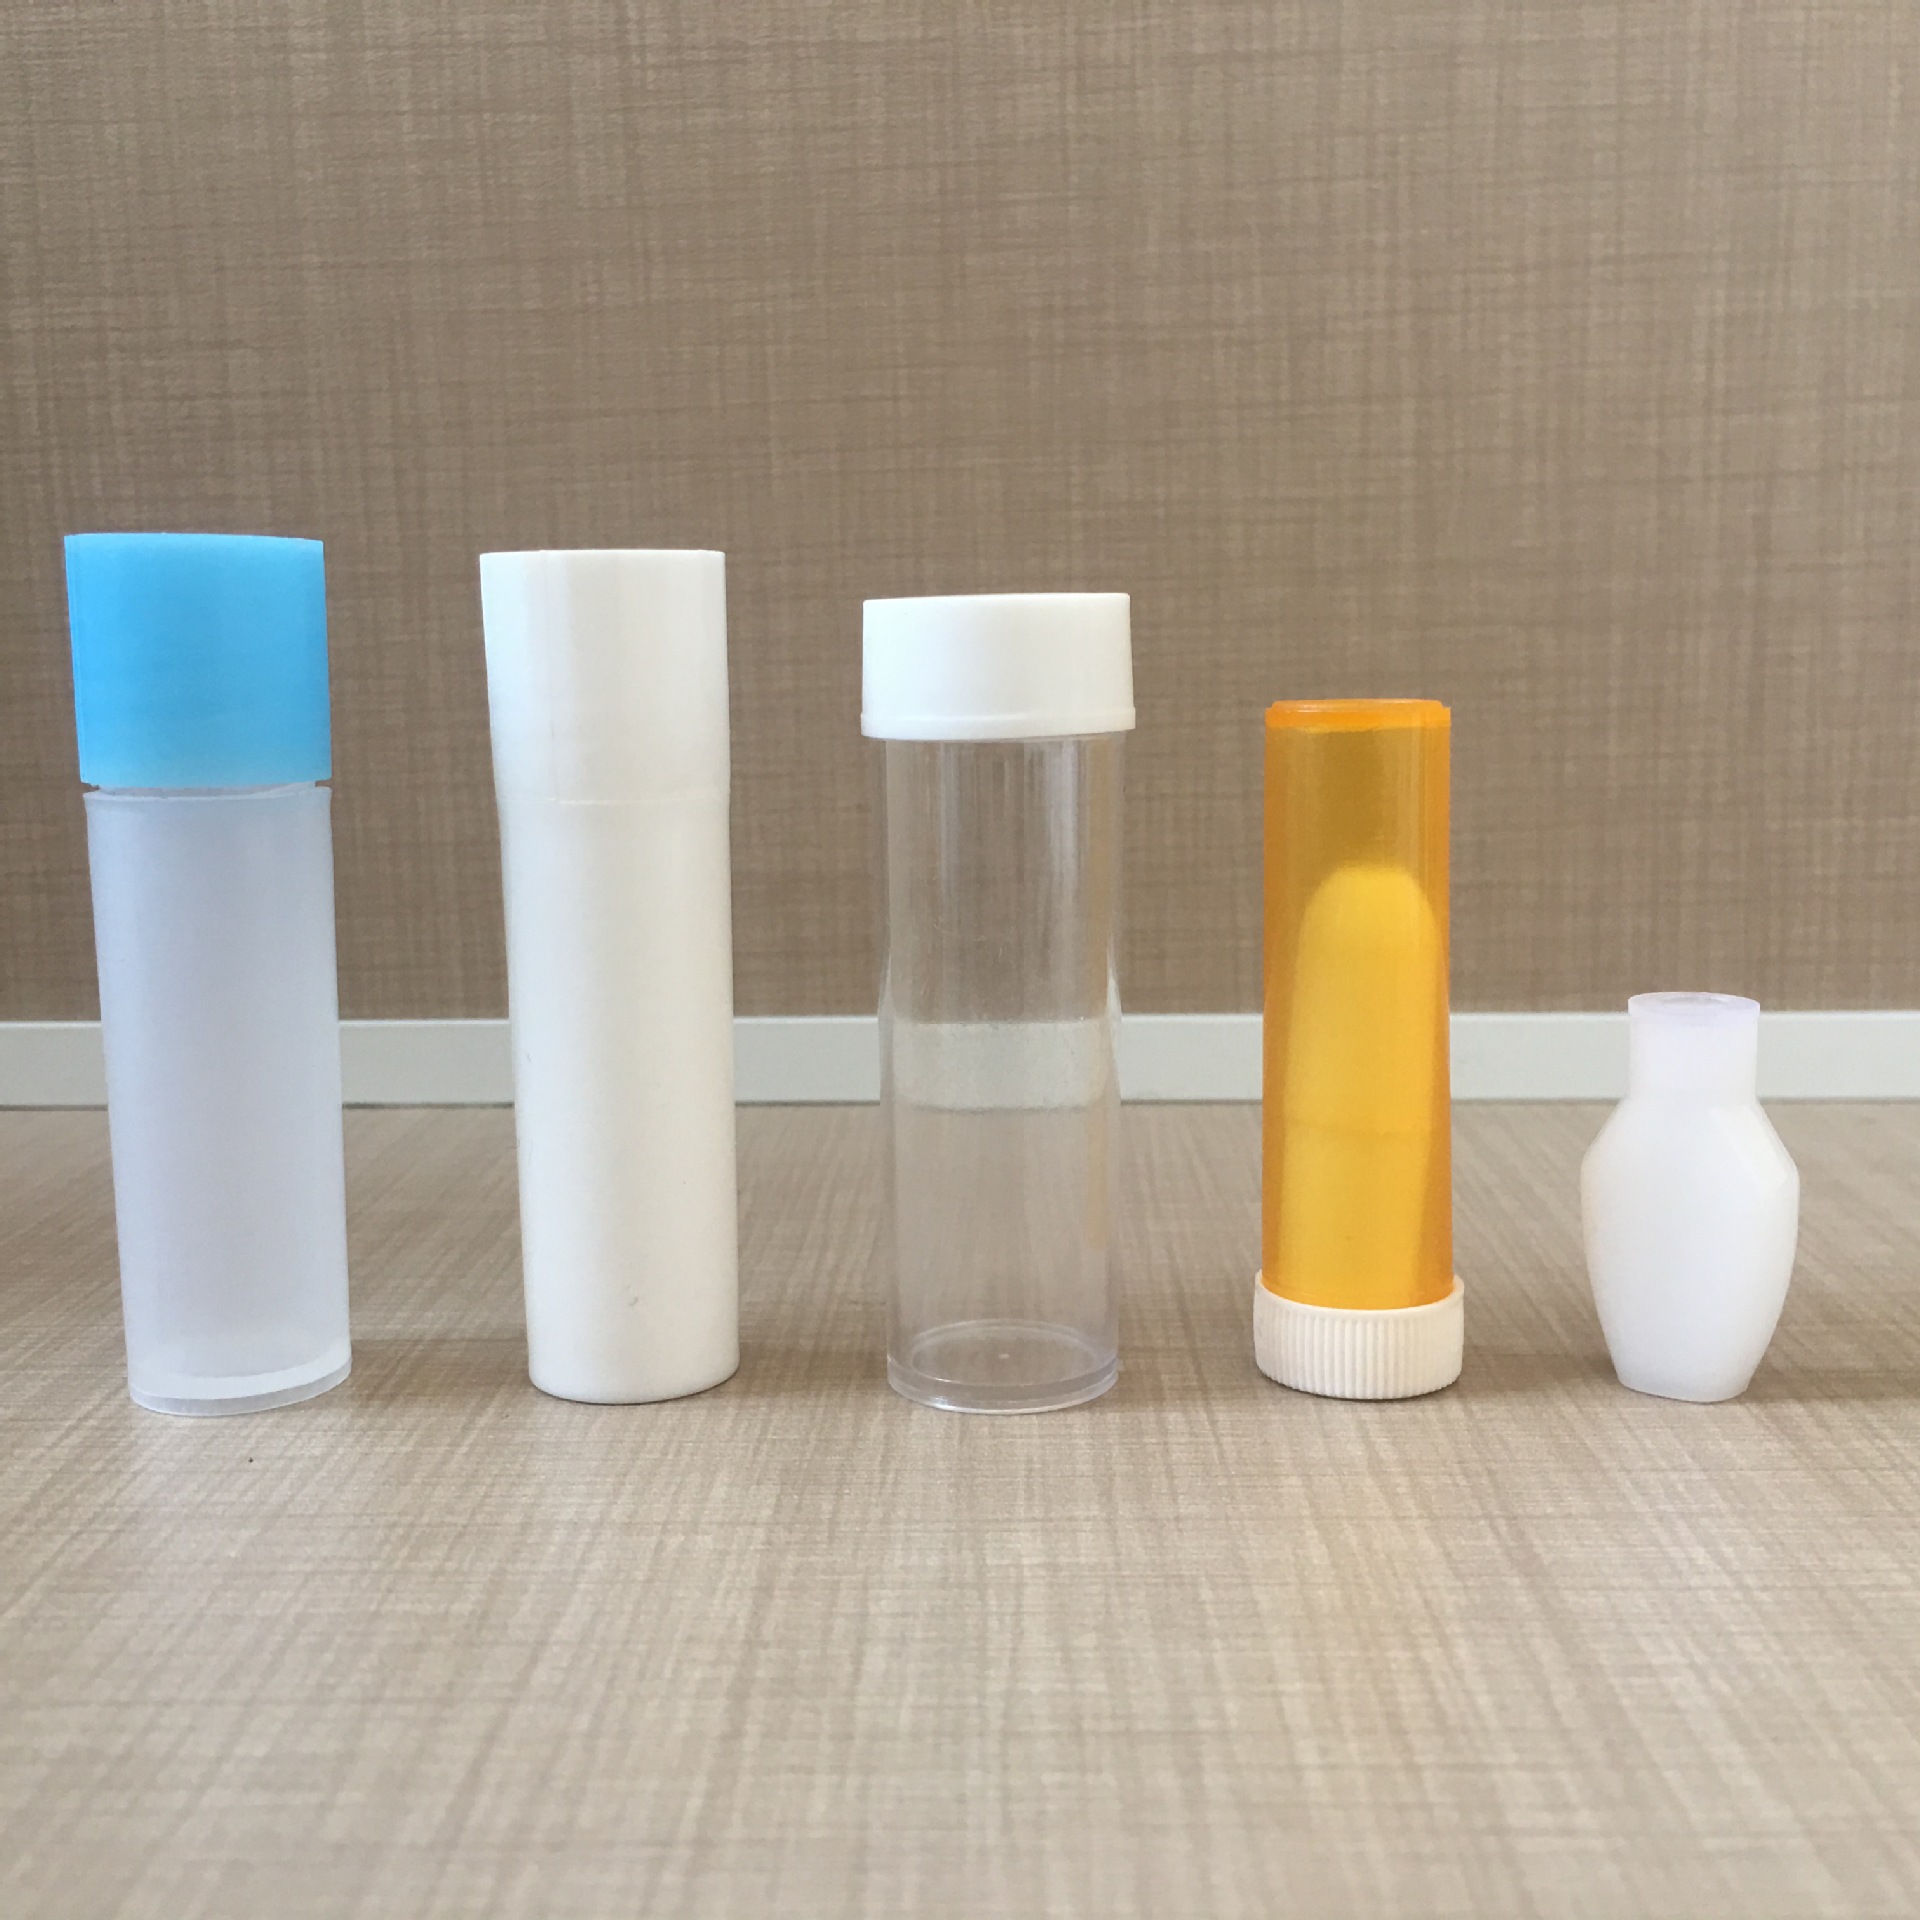 口服液体药用塑料瓶液体塑料瓶外用塑料瓶60ml塑料瓶PE注吹塑料瓶示例图13